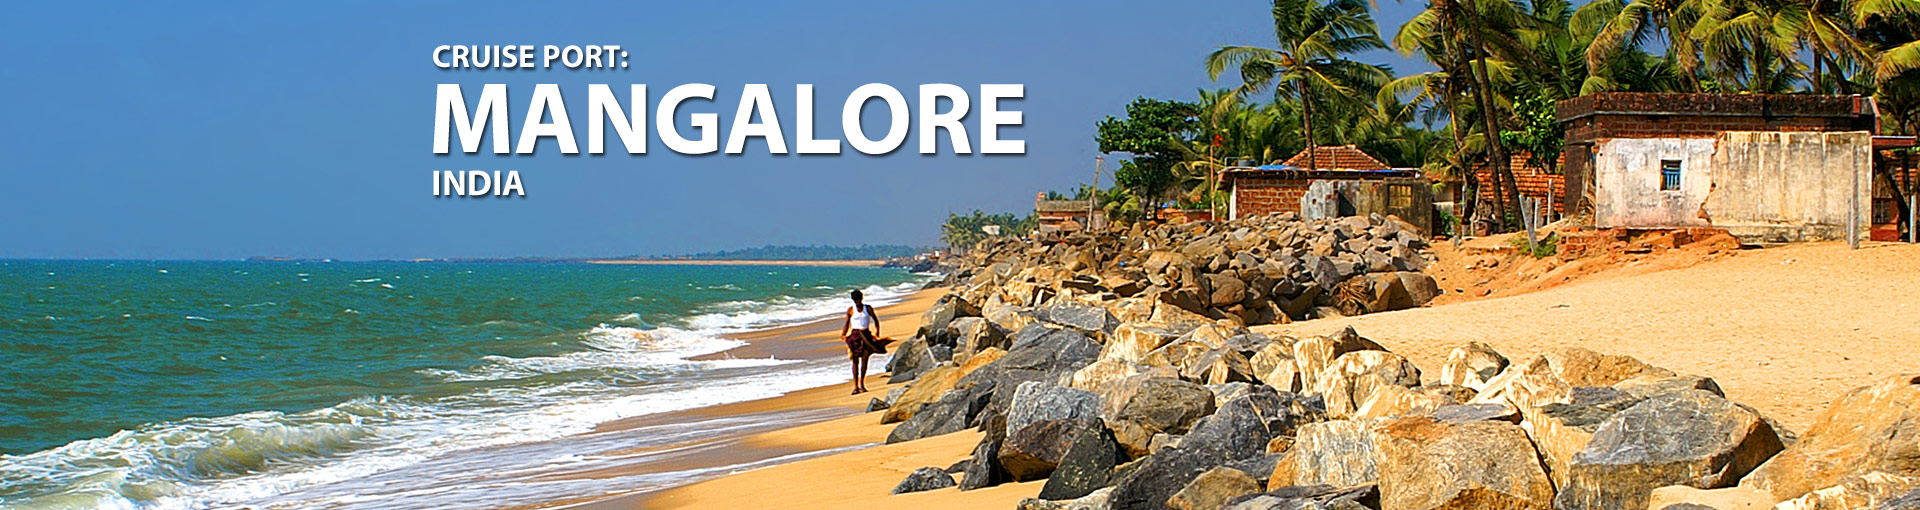 Mangalore, India Cruise Port, 2017 and 2018 Cruises from Mangalore.